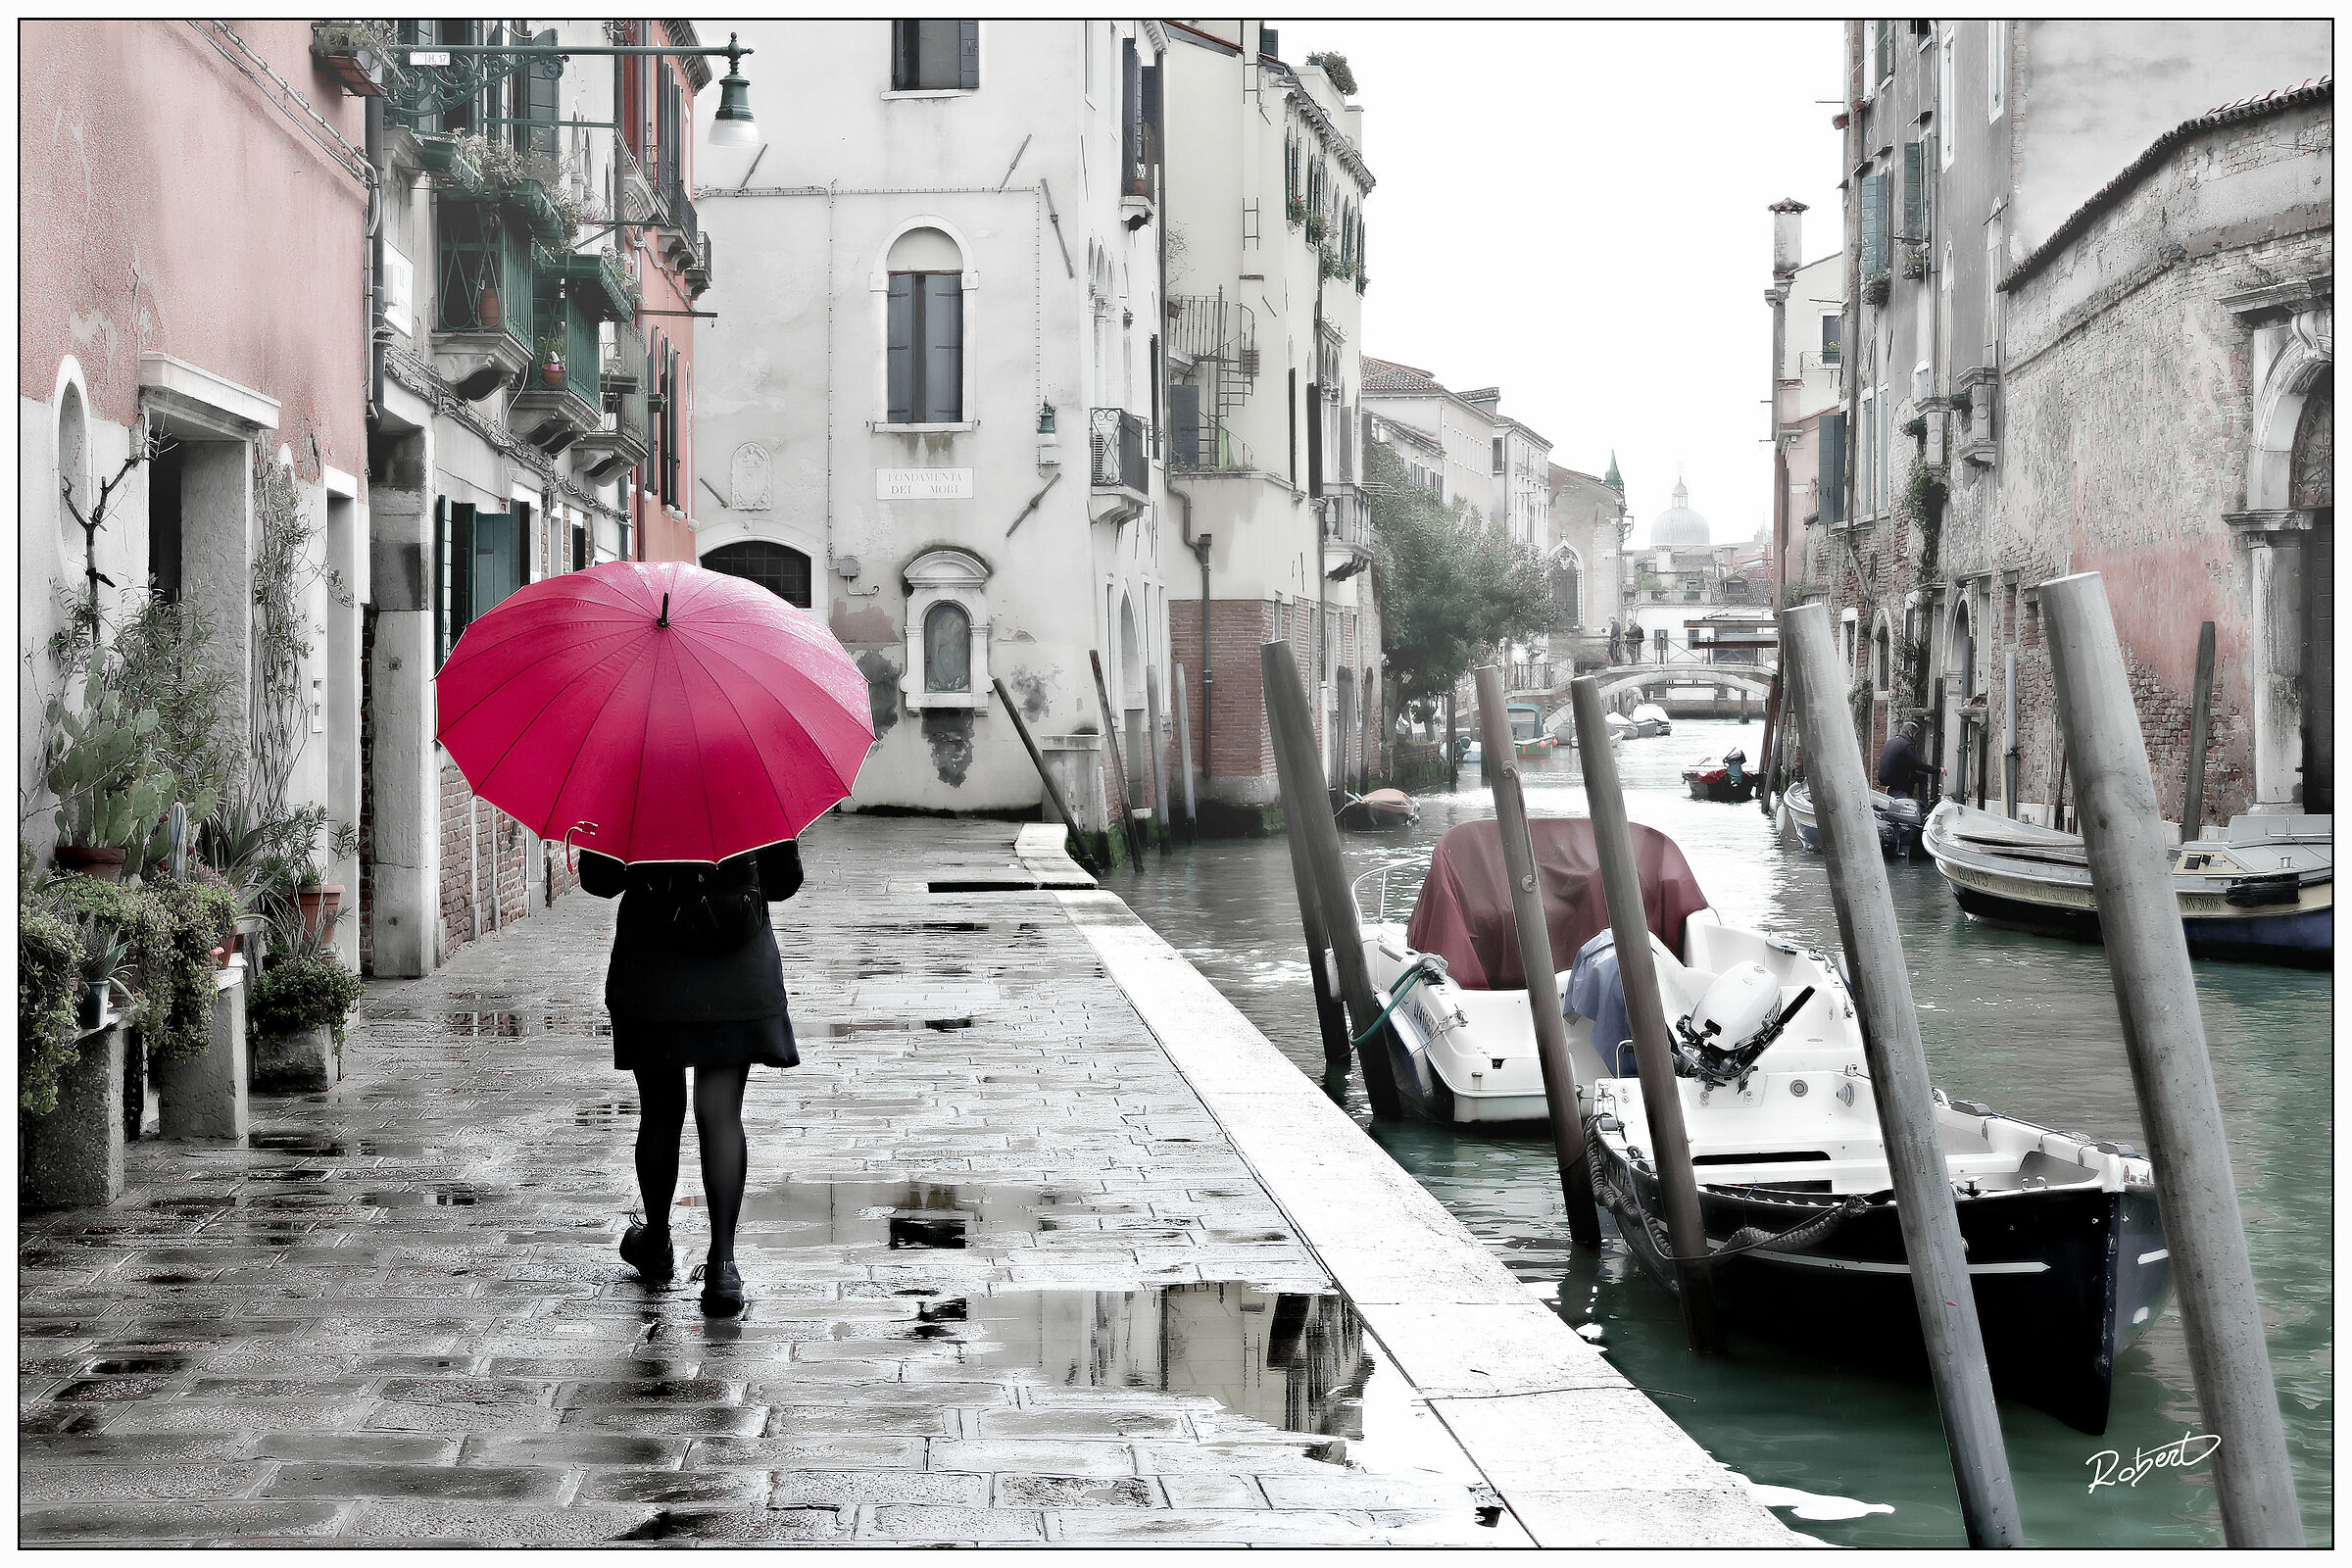 Rainy Venice...